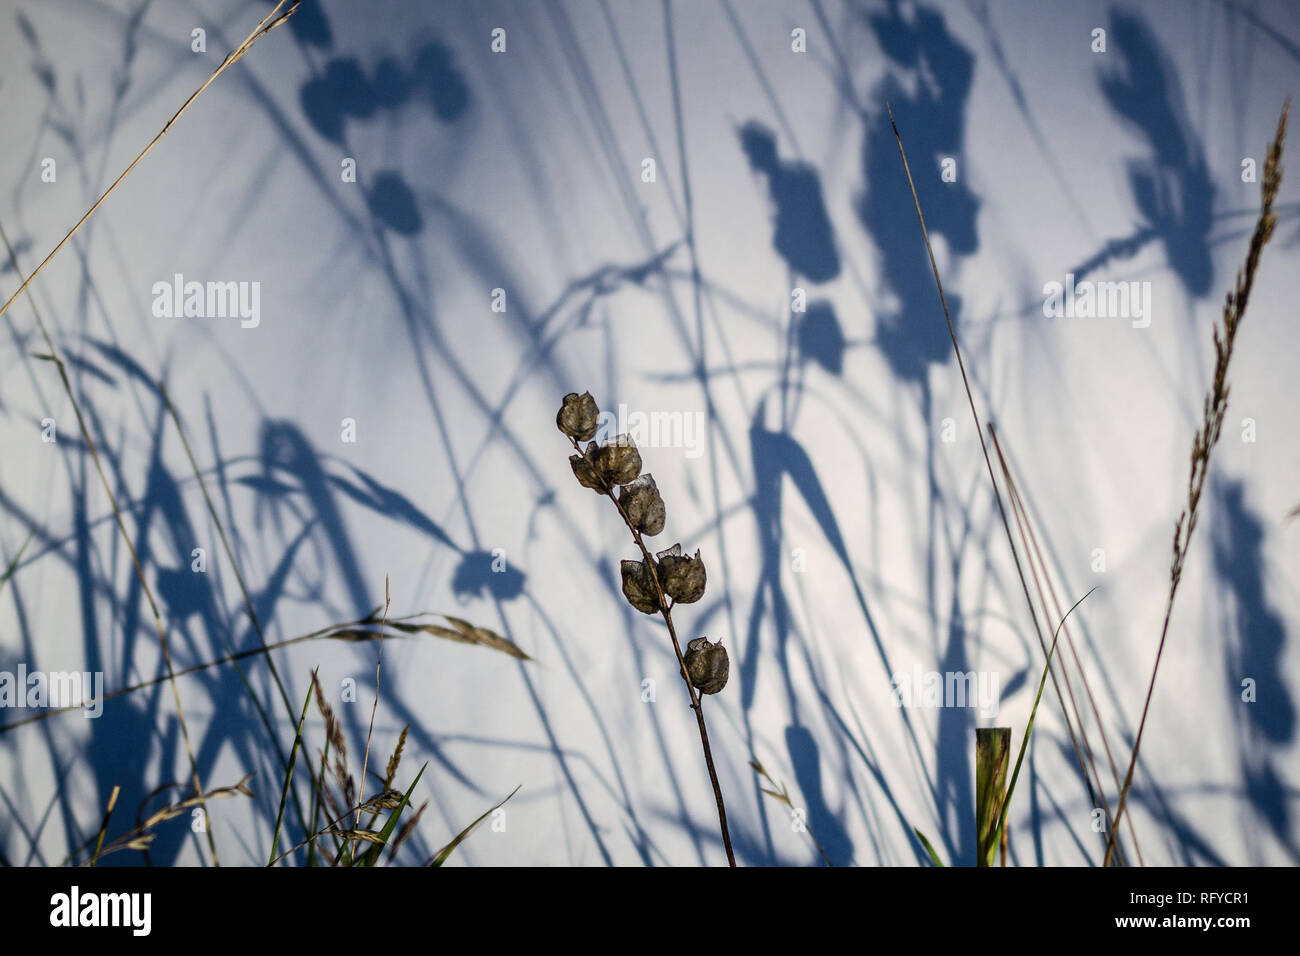 Sonaglio giallo Capsule cialde di sementi a fine luglio. Ciclo di vita di un'eme-pianta parassita crescita selvaggia tra erbe in Eton, Inghilterra. Foto Stock